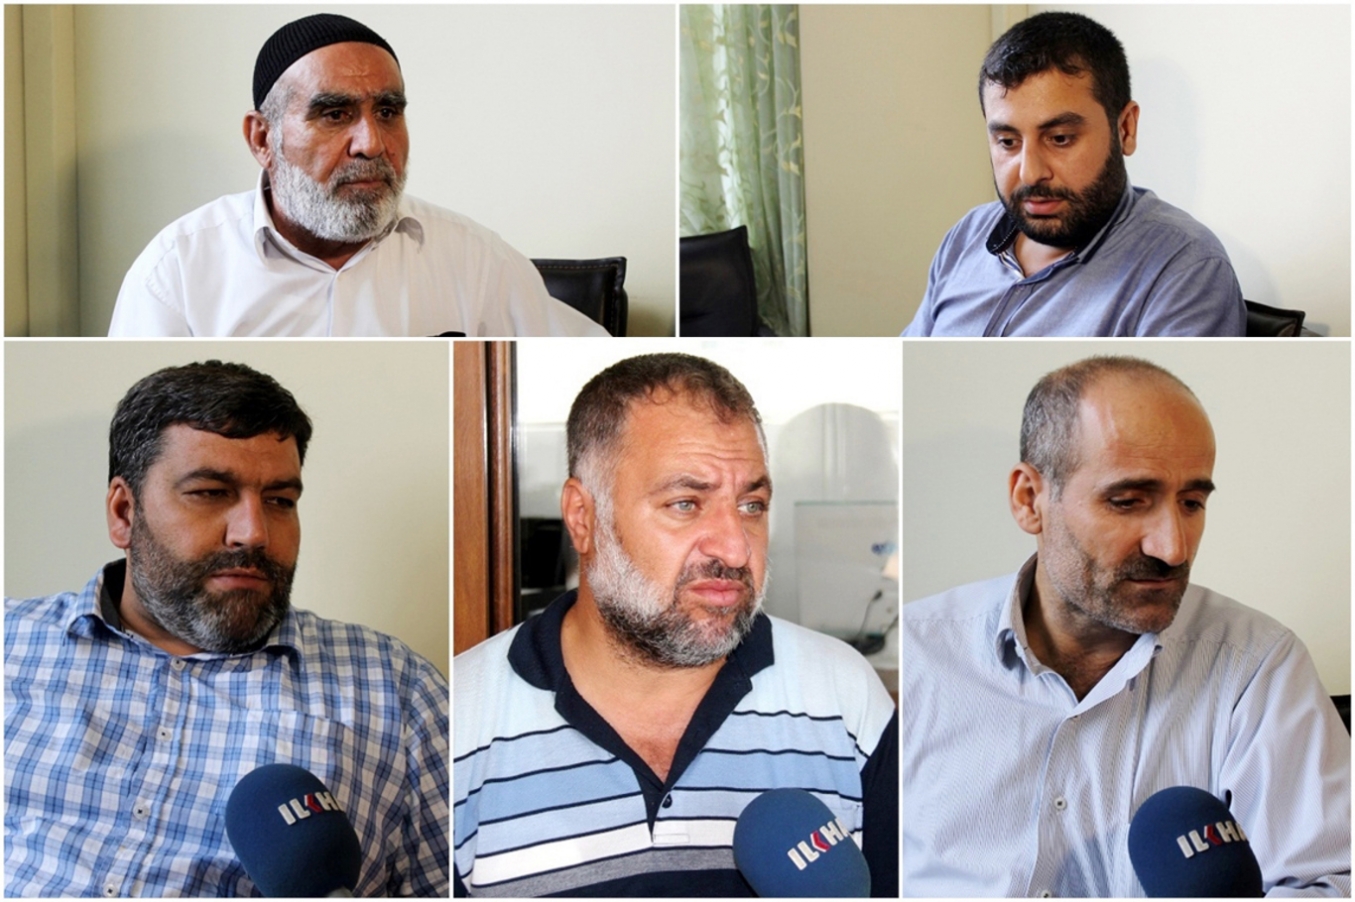 Şehit aileleri Ankara’da görülecek dava için yola çıktı